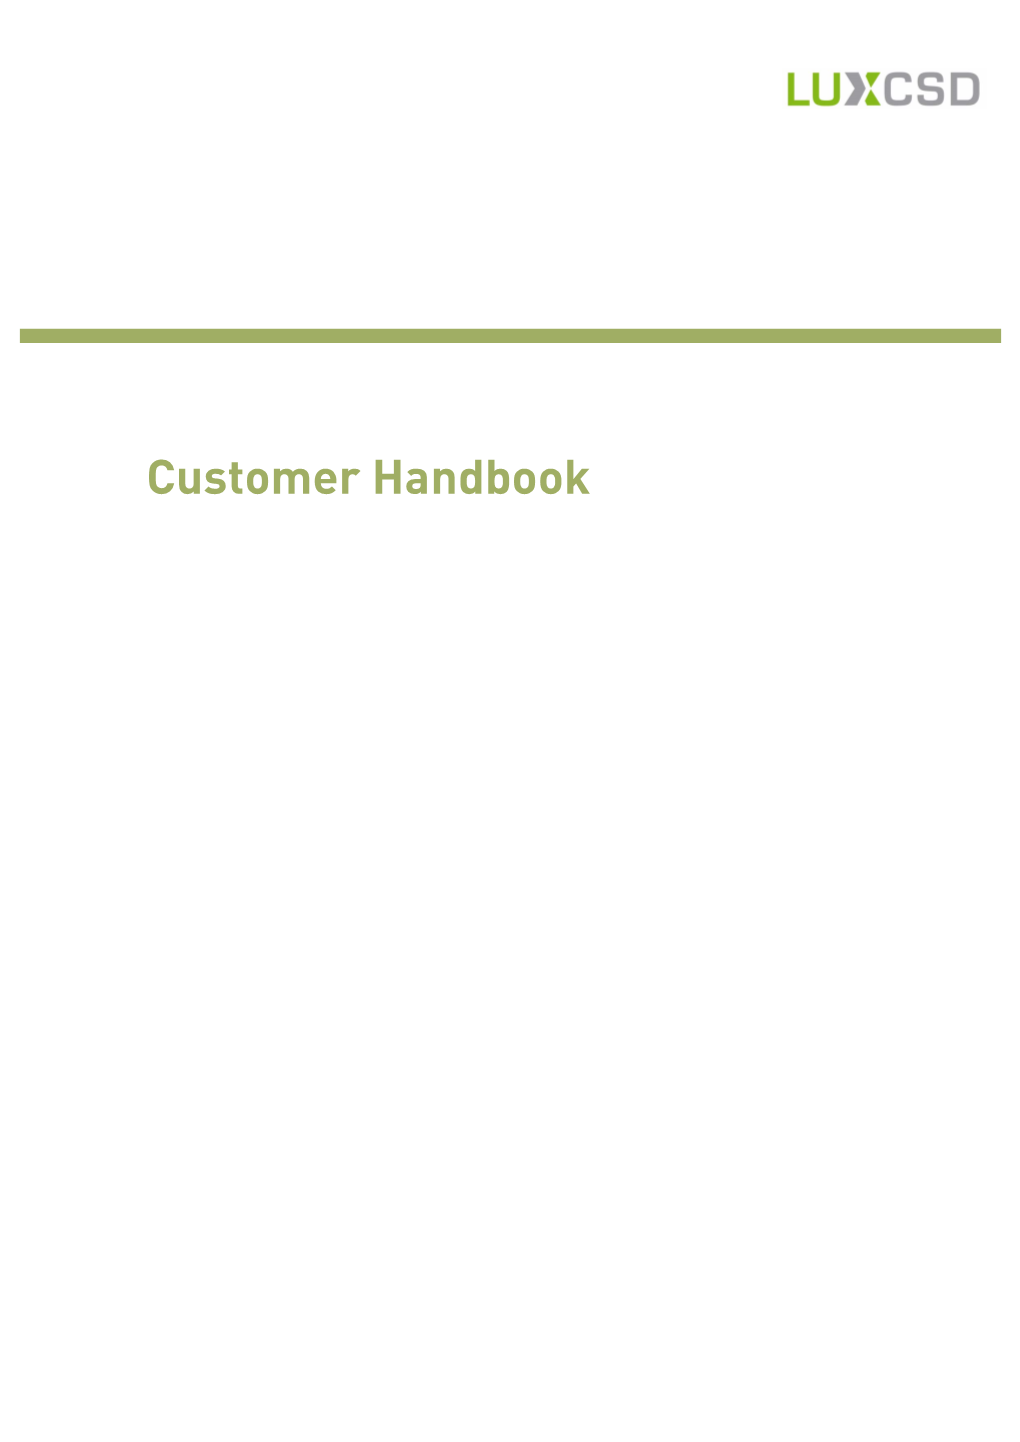 Clearstream Banking Luxembourg Customer Handbook